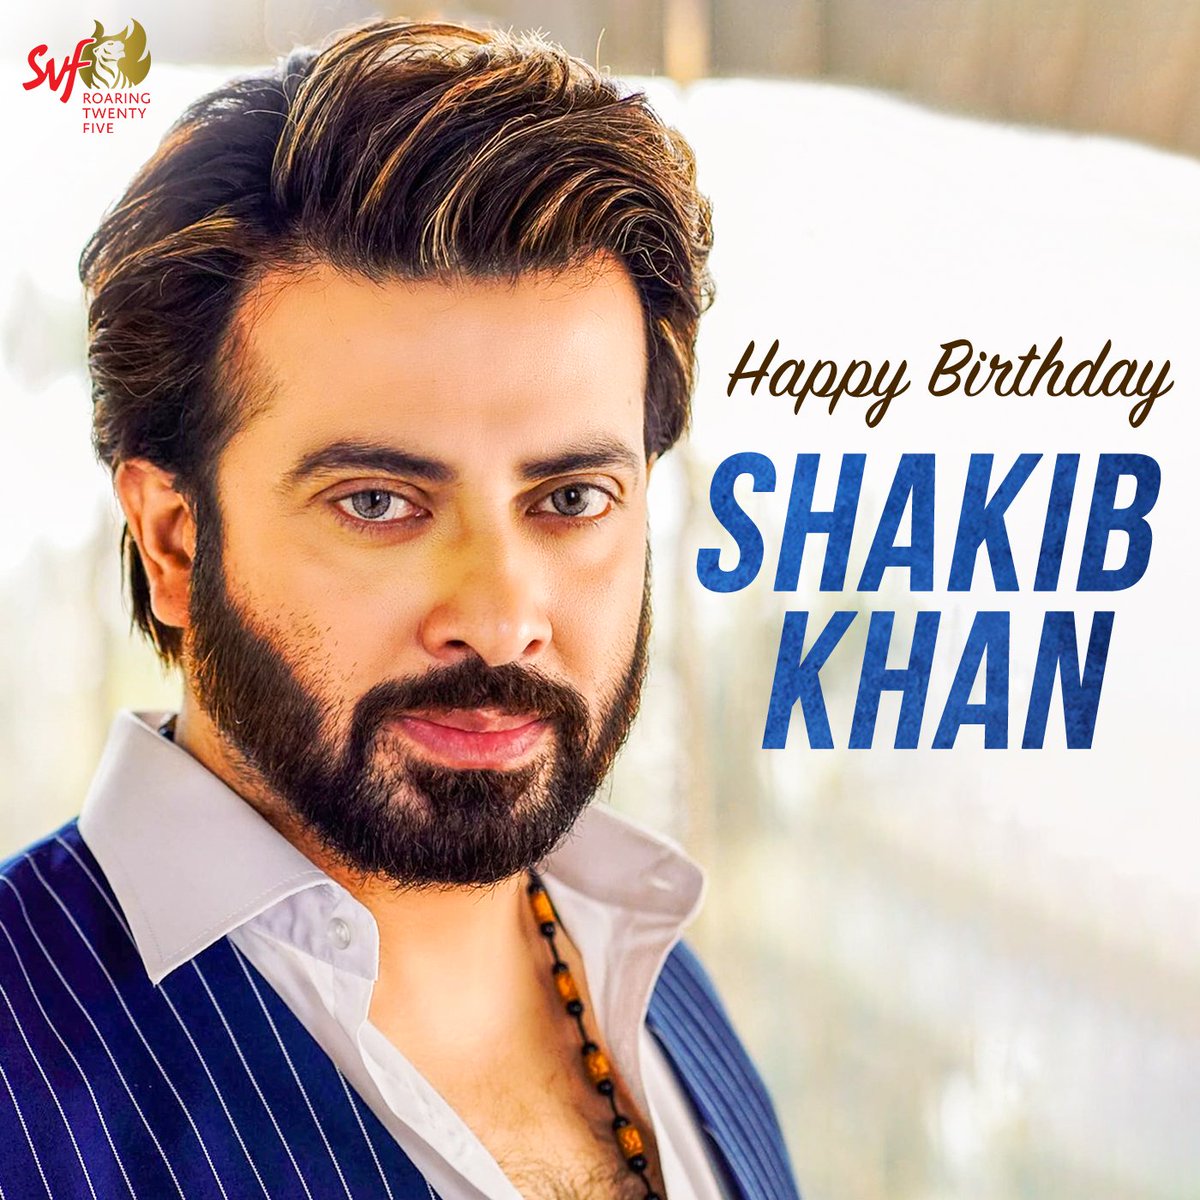 দুই বাংলার heartthrob @ShakibKhanBD-এর জন্মদিনে রইল অনেক শুভেচ্ছা ও ভালোবাসা ❤️
#HappyBirthdayShakibKhan